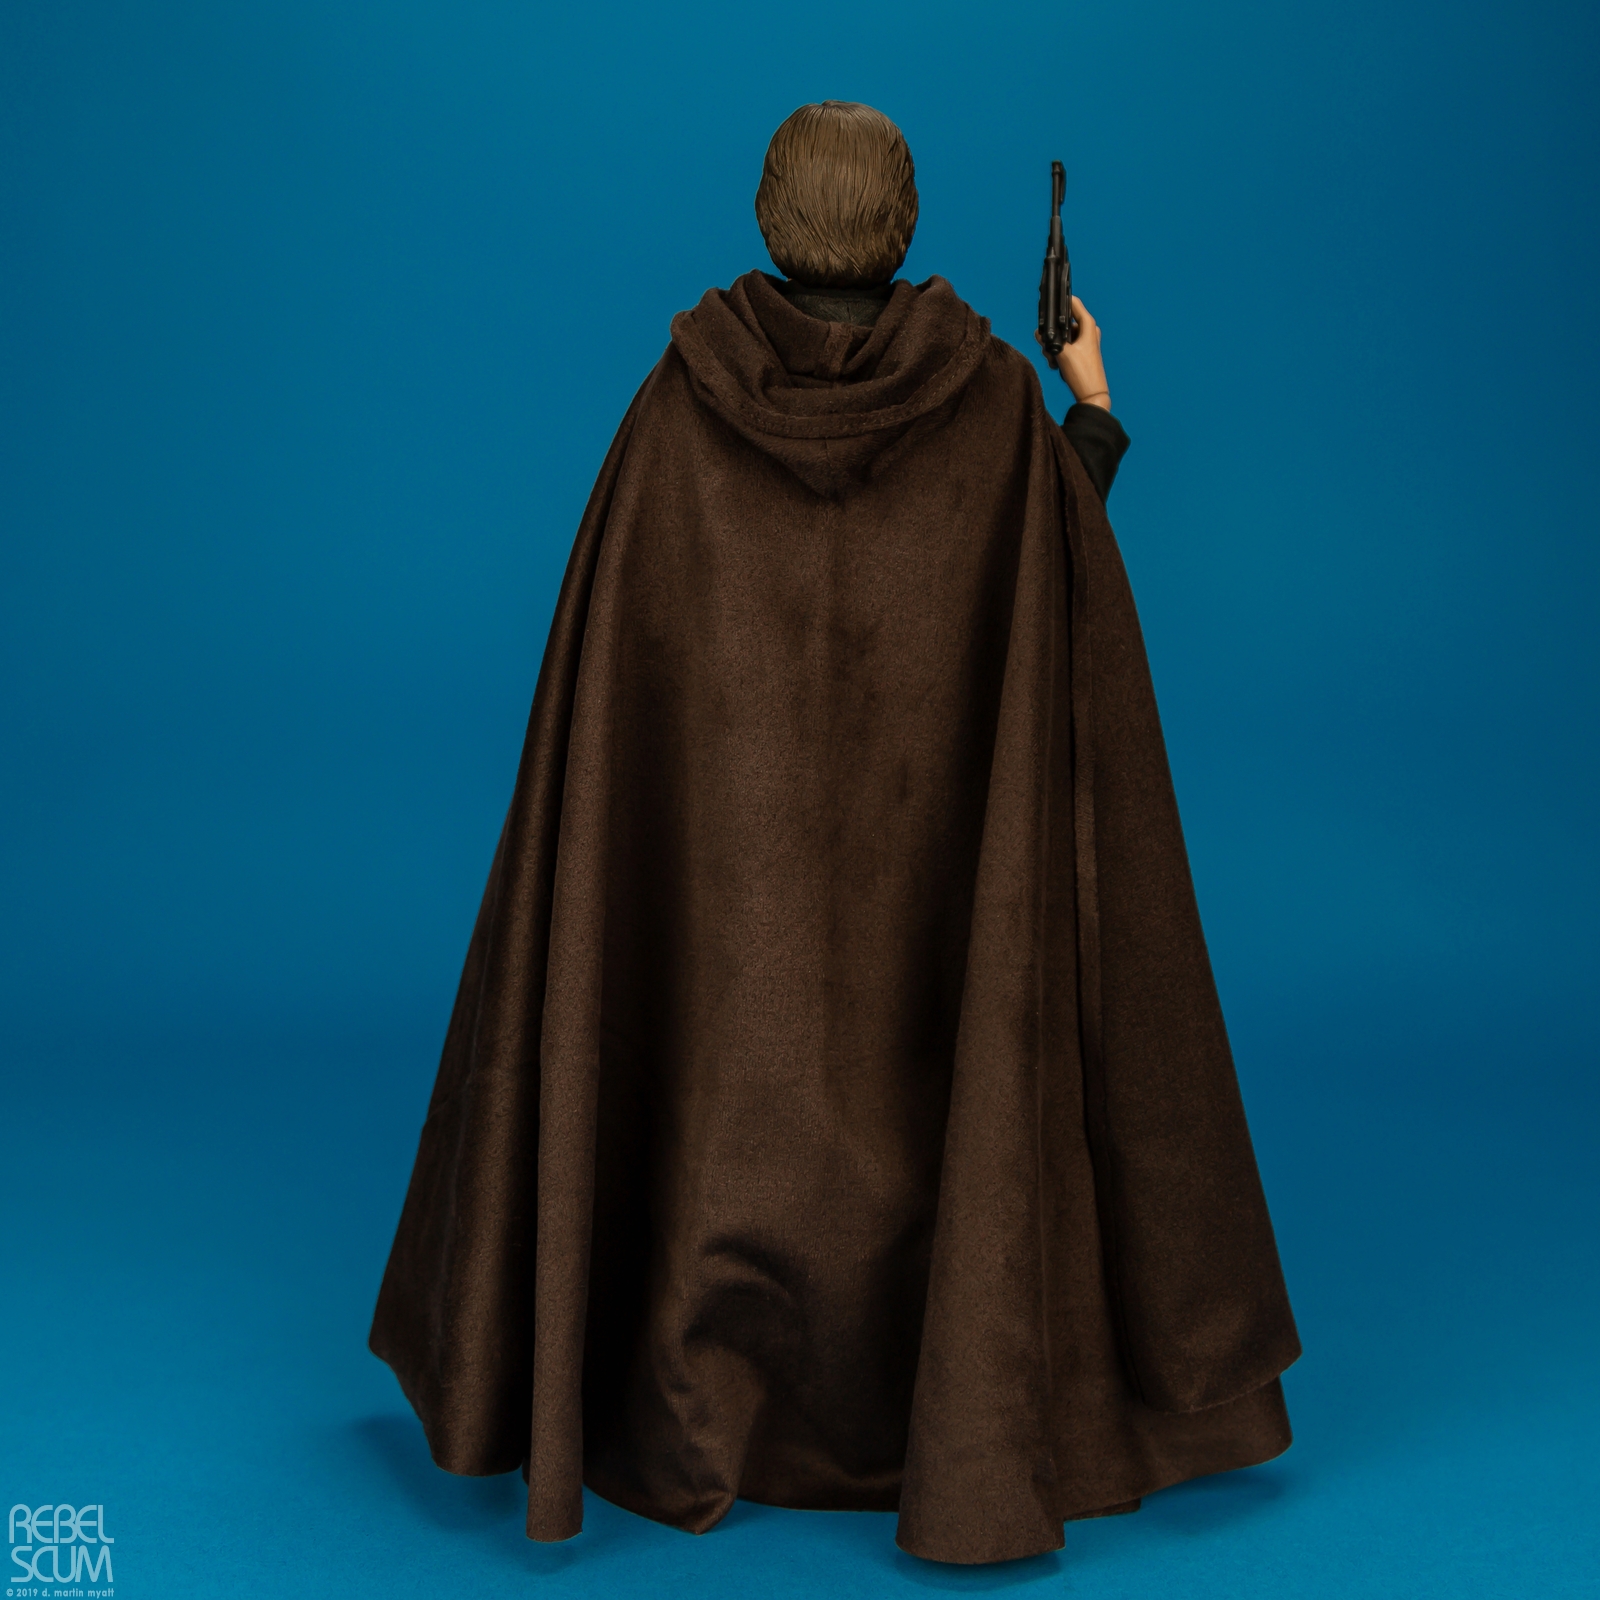 Luke-Skywalker-MMS429-Return-Of-The-Jedi-Hot-Toys-008.jpg